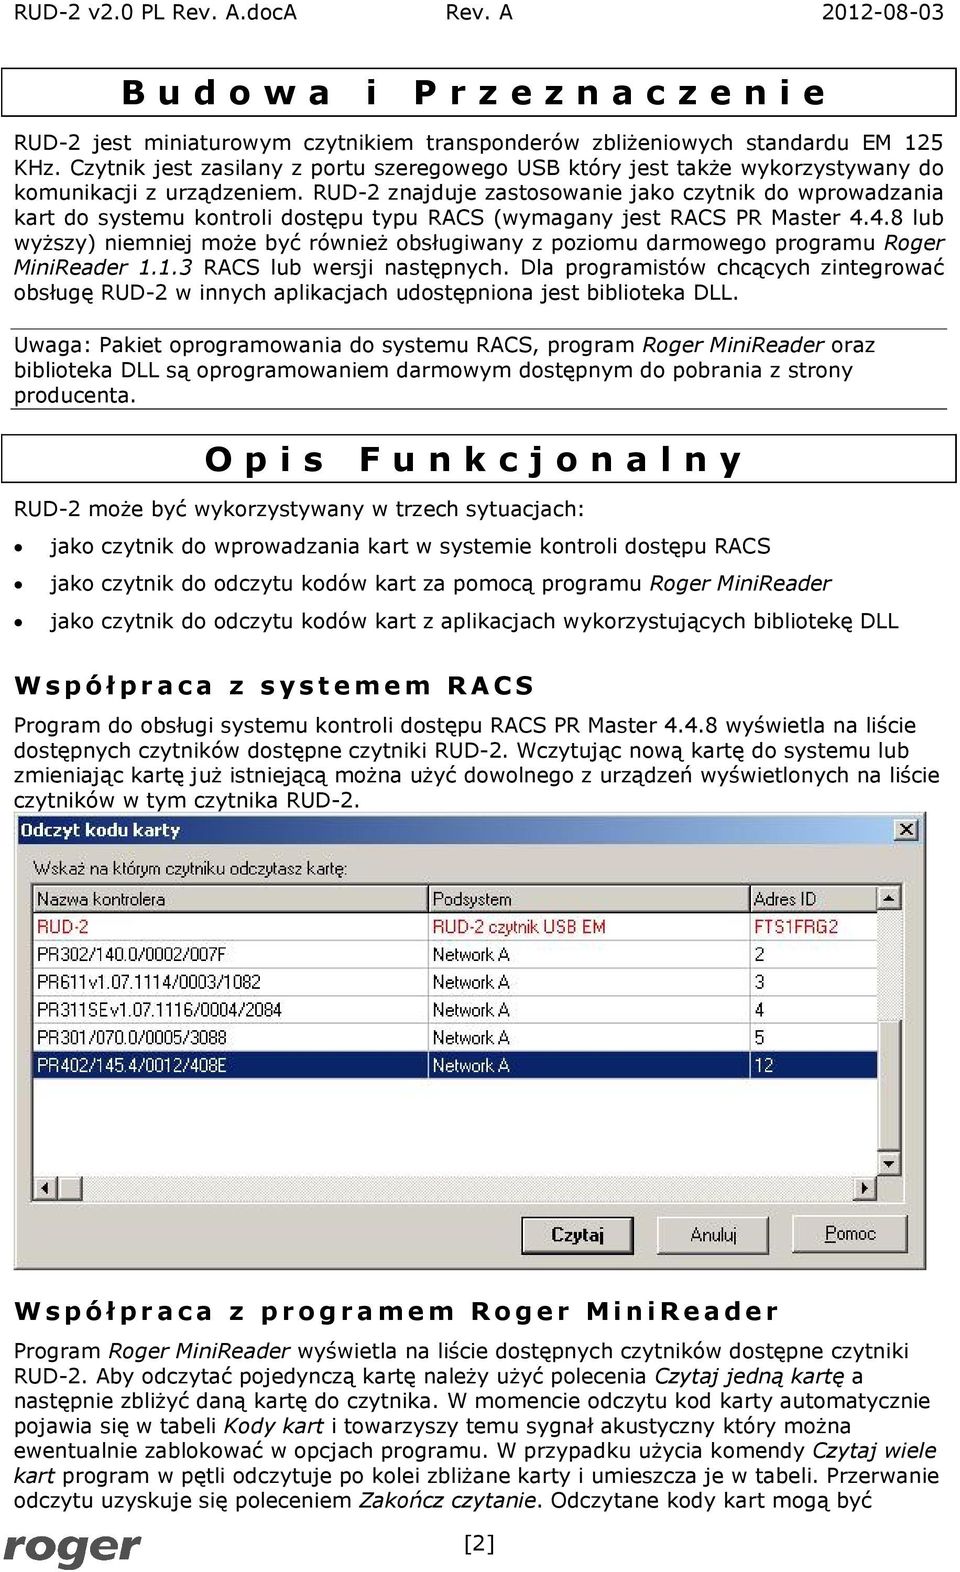 RUD-2 znajduje zastosowanie jako czytnik do wprowadzania kart do systemu kontroli dostępu typu RACS (wymagany jest RACS PR Master 4.